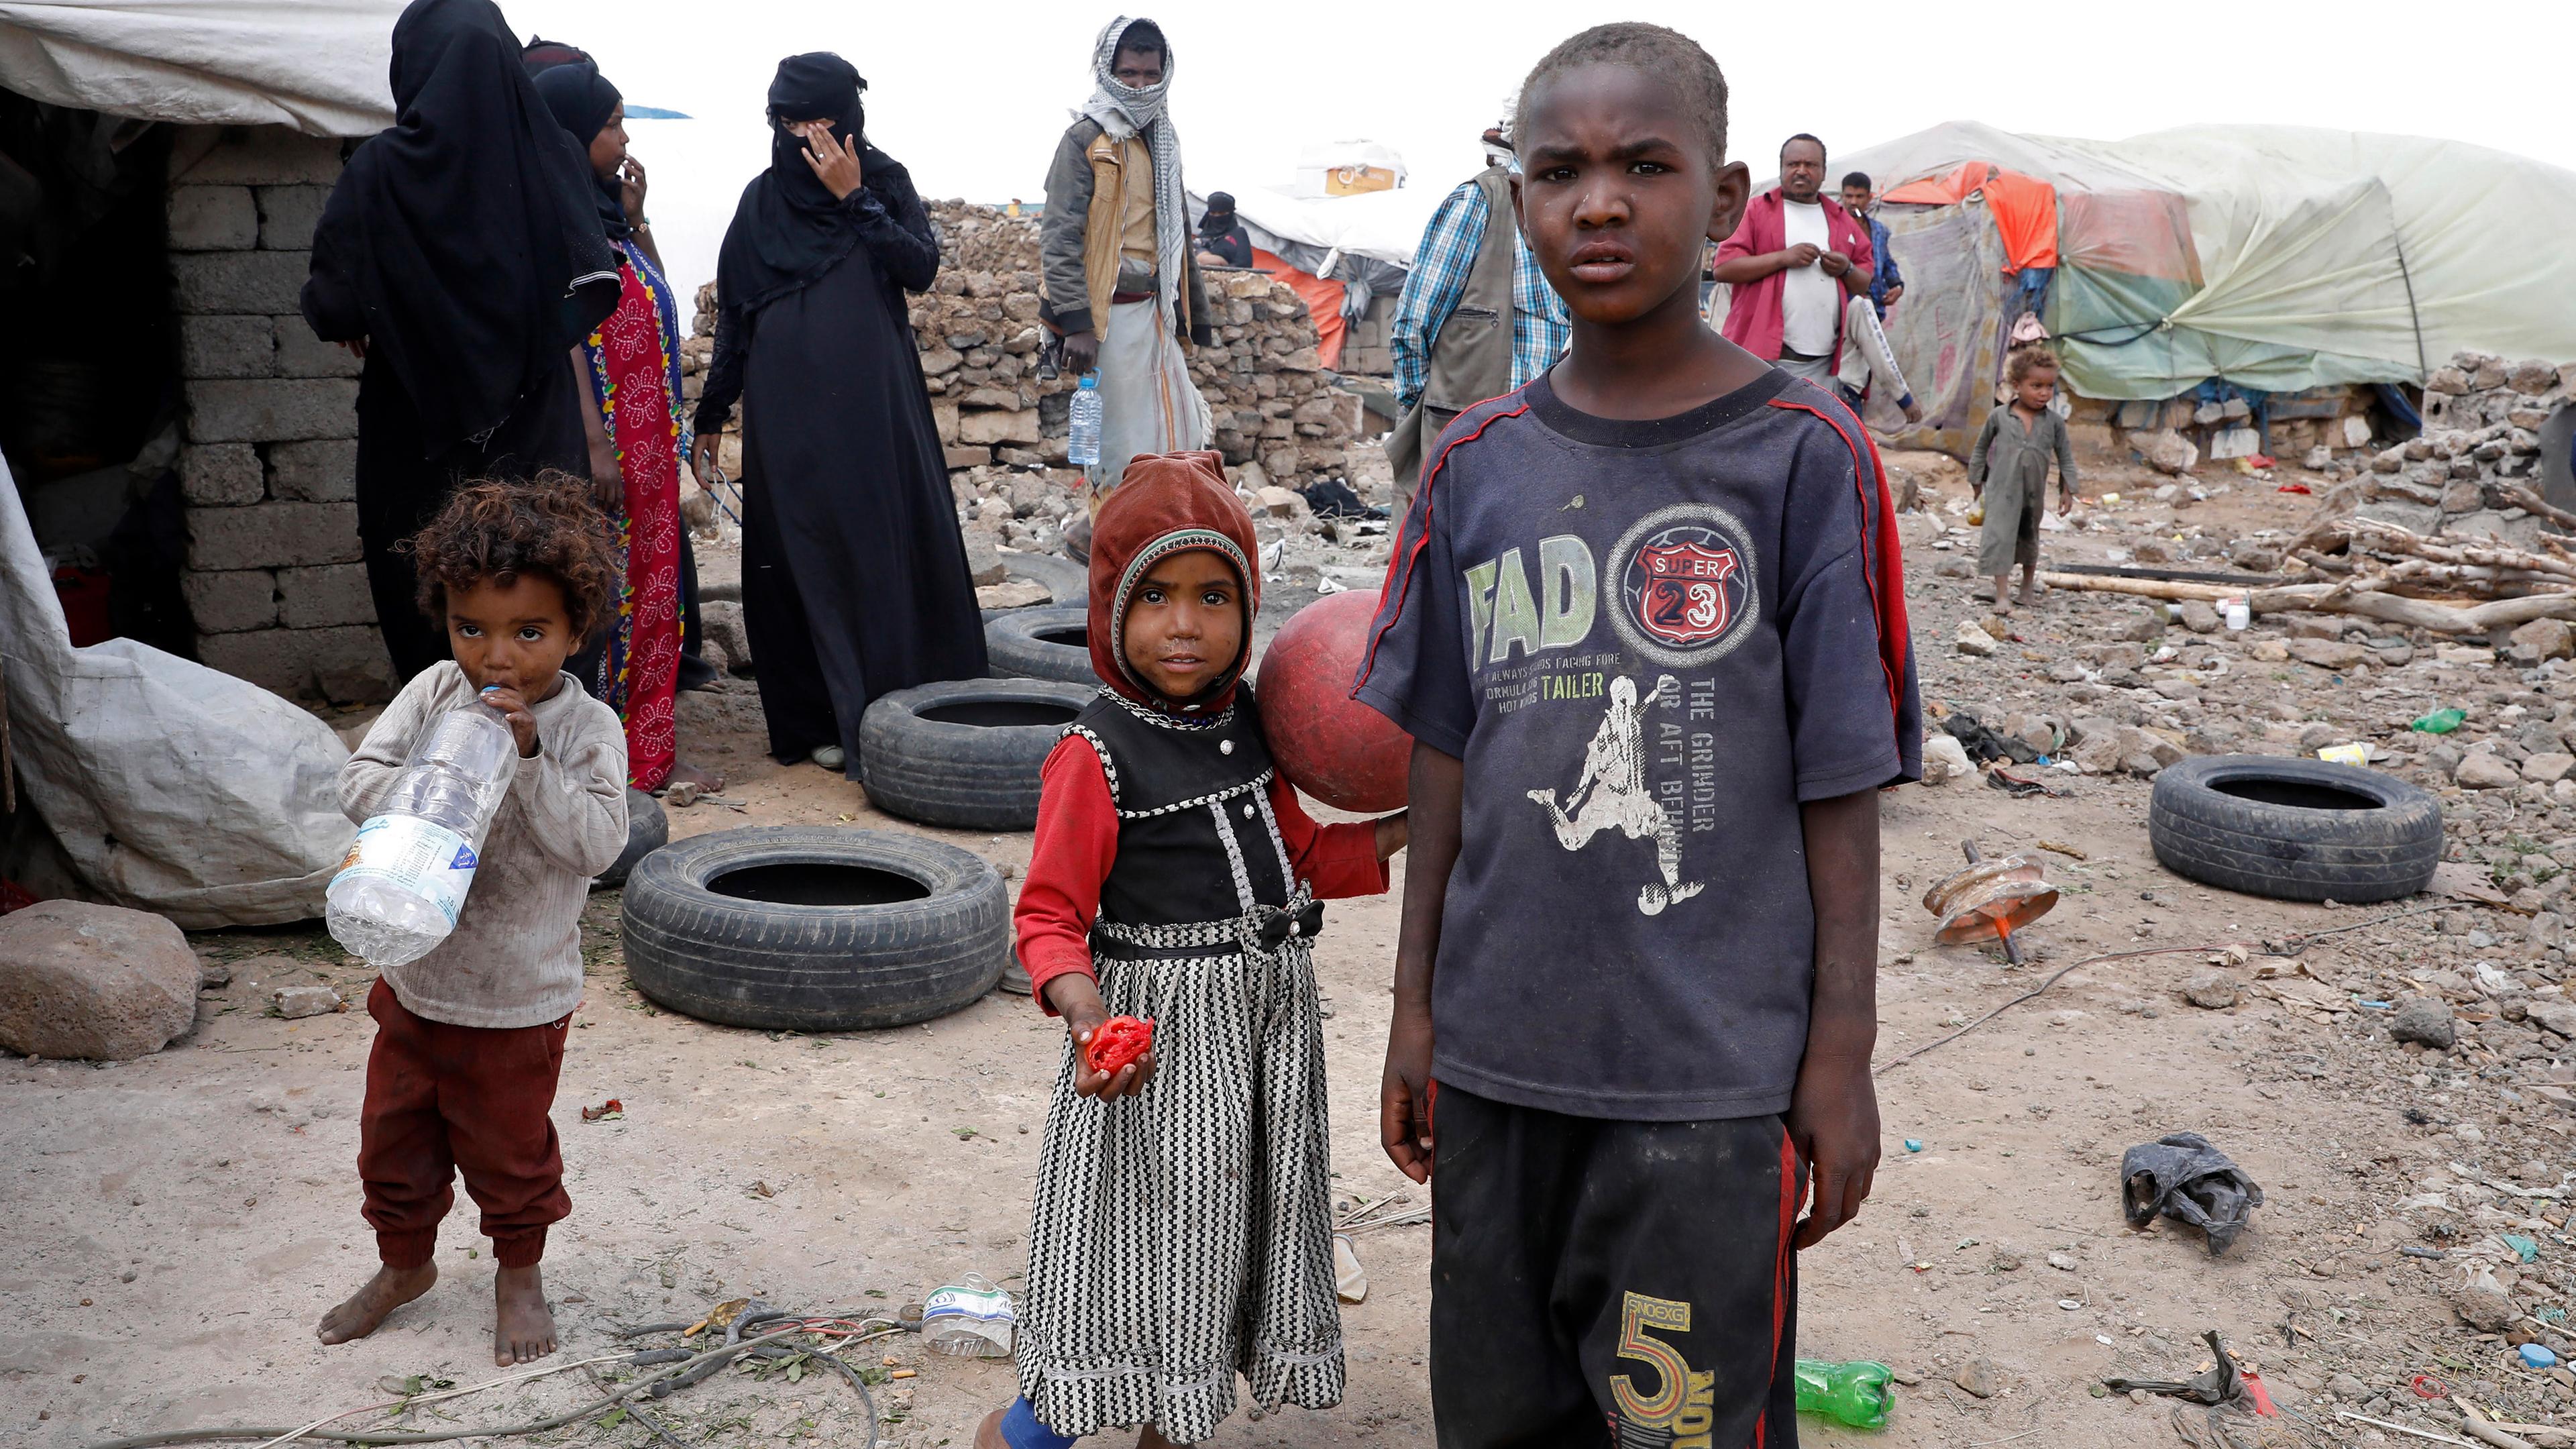 Kinder aus Jemen, aufgenommen am 24.08.2021